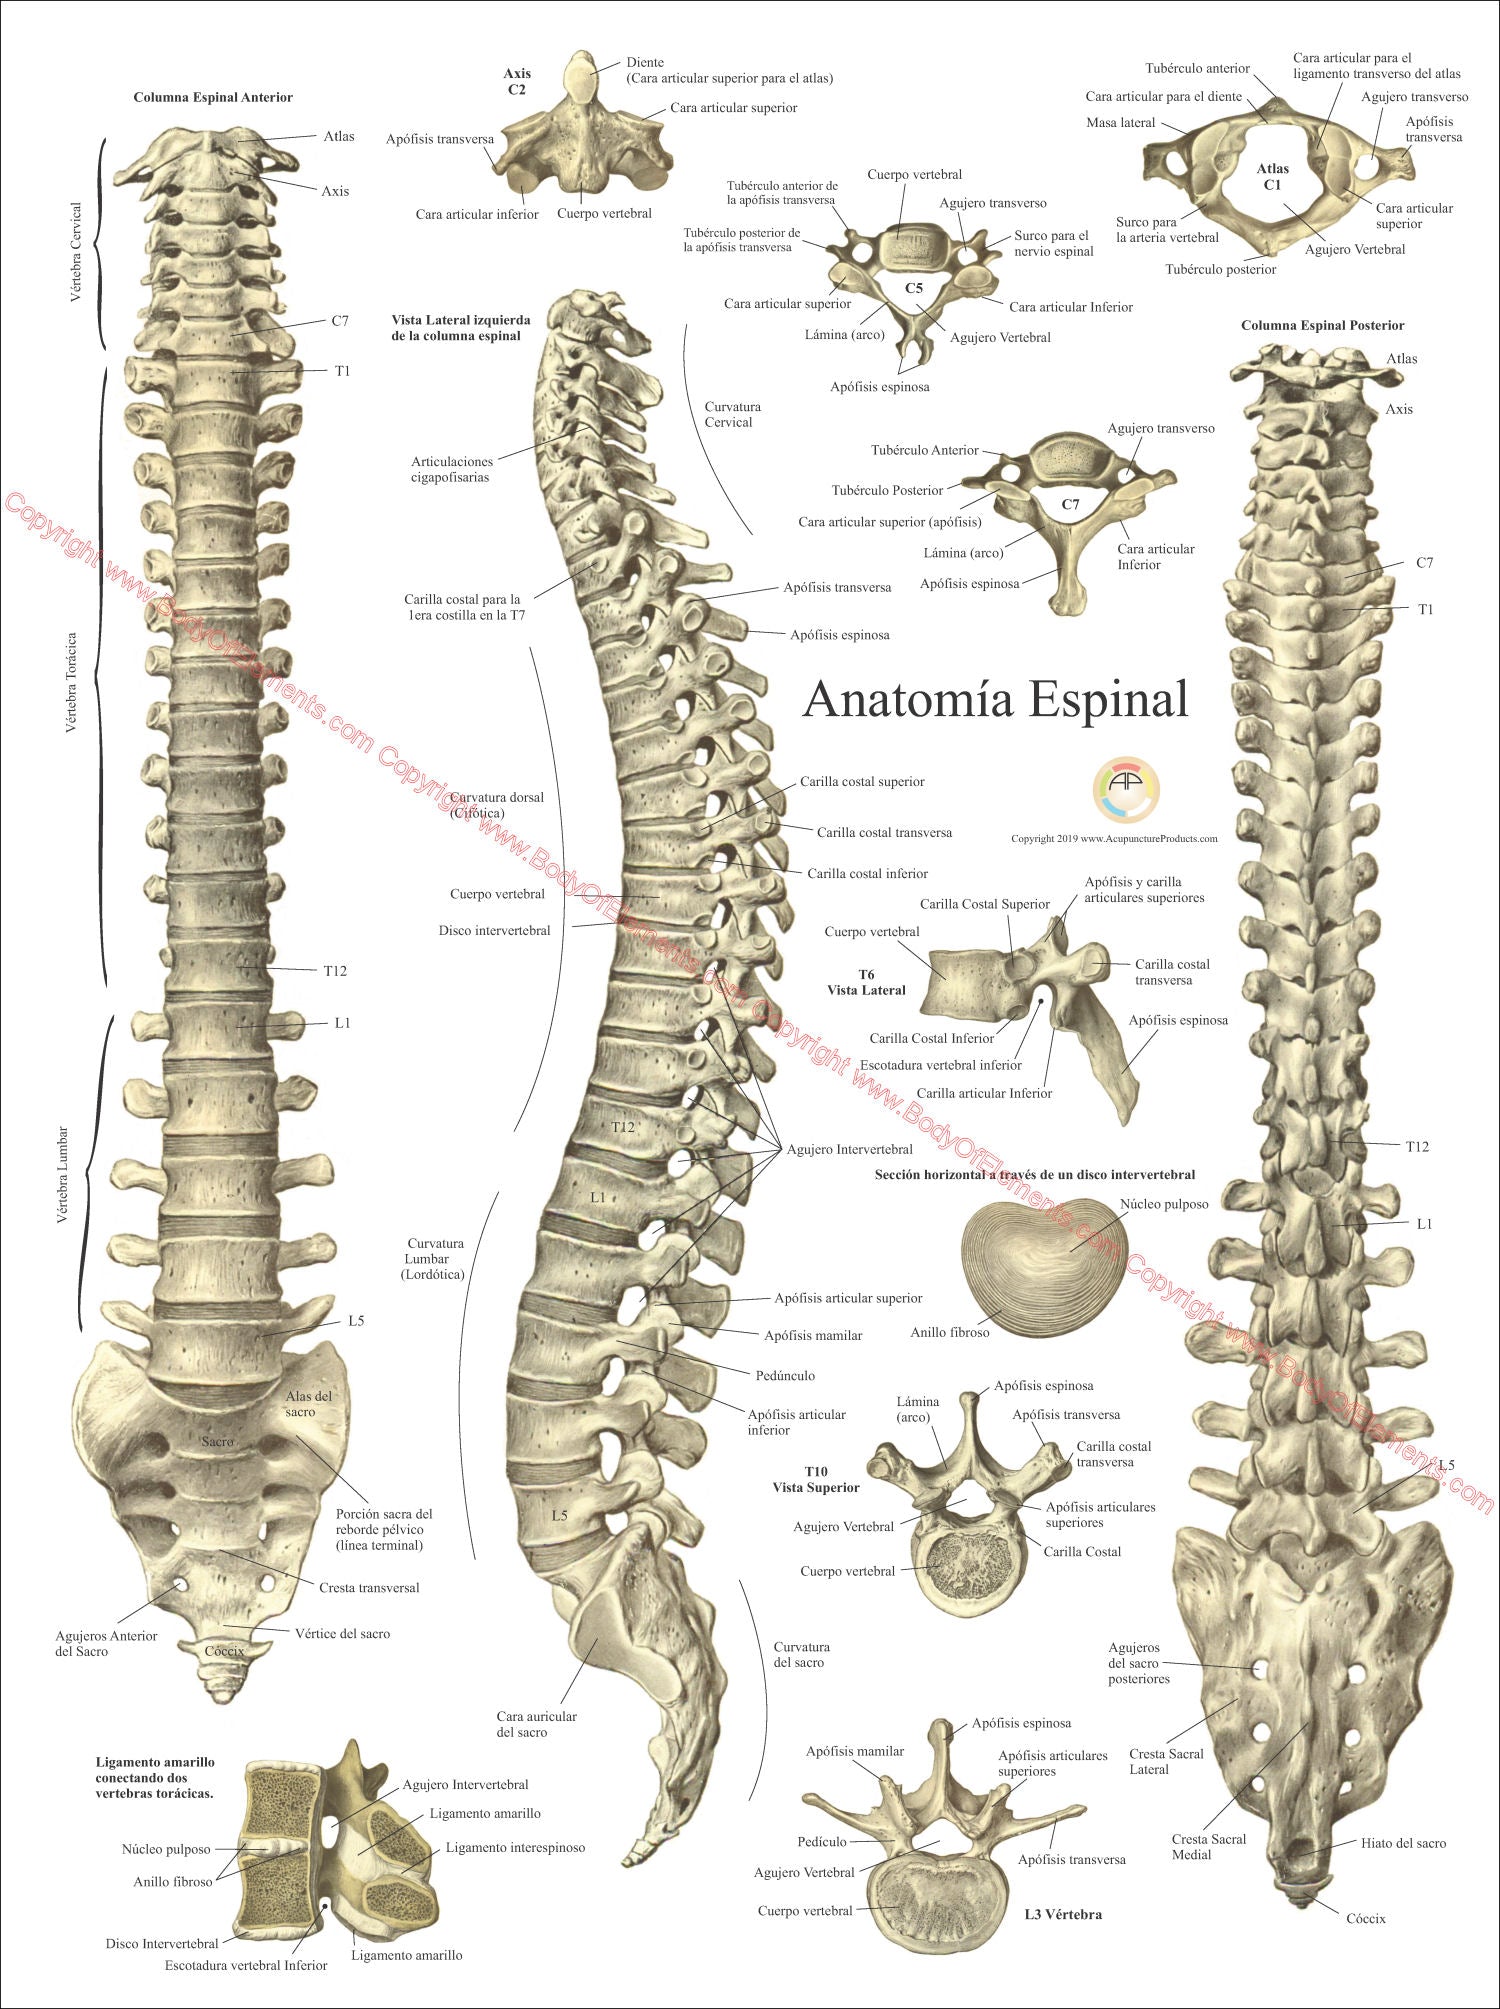 Human spine vertebrae anatomy chart in Spanish